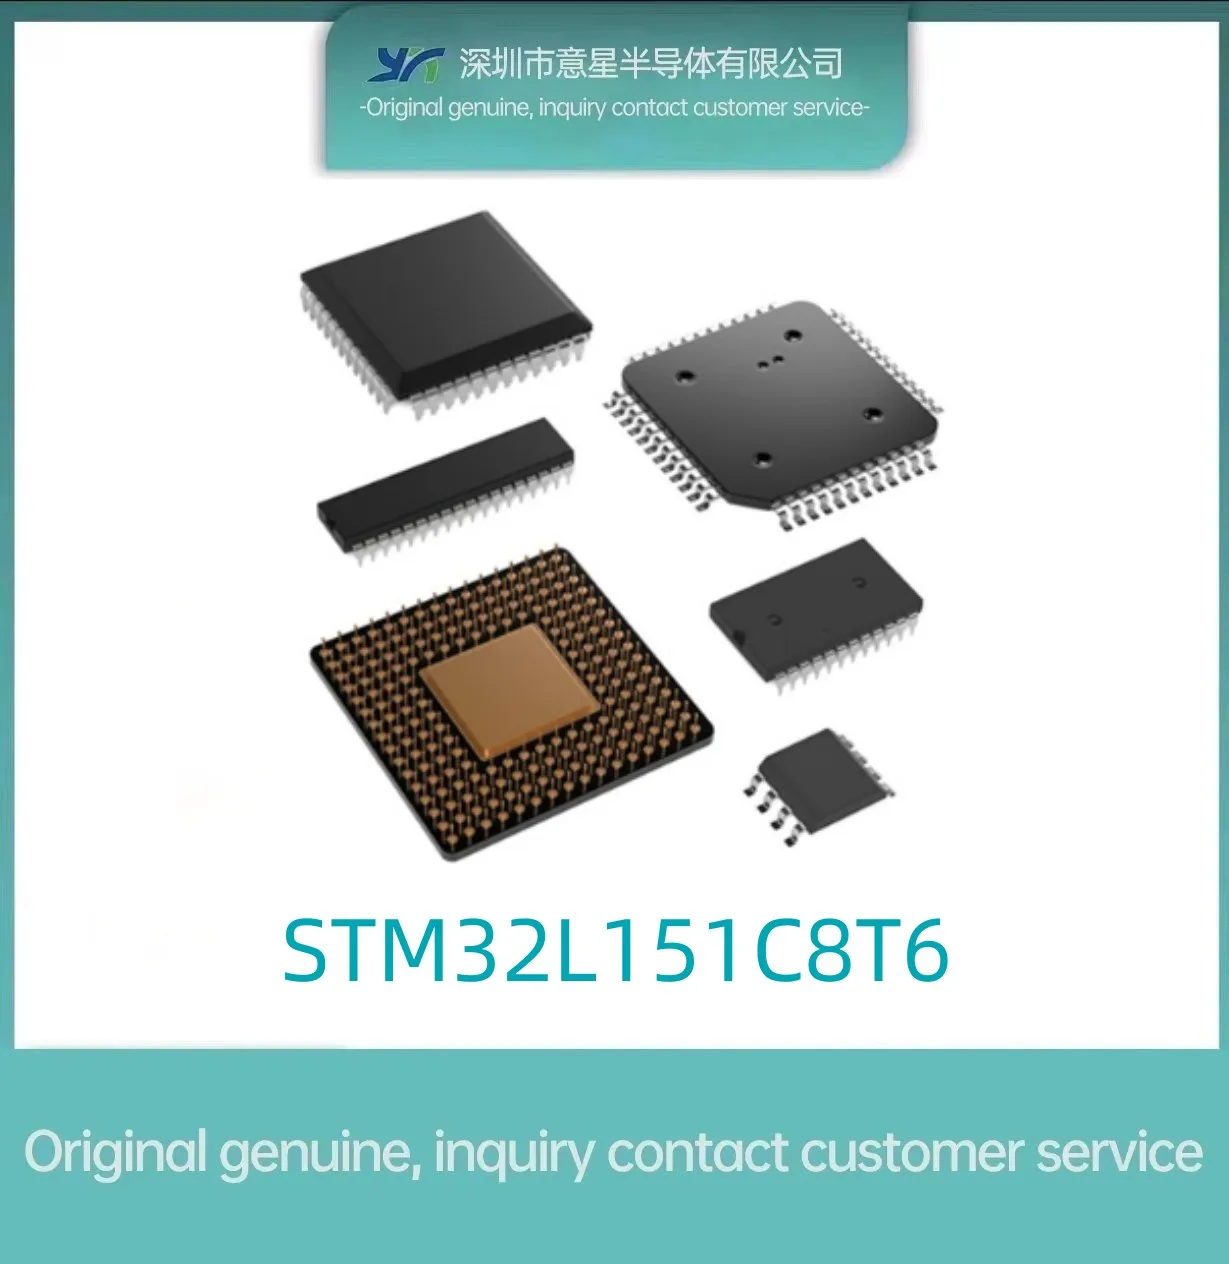 STM32L151C8T6 Комплект LQFP48 оригинальный инвентарь 151C8T6 микроконтроллер оригинальный оригинальный 0